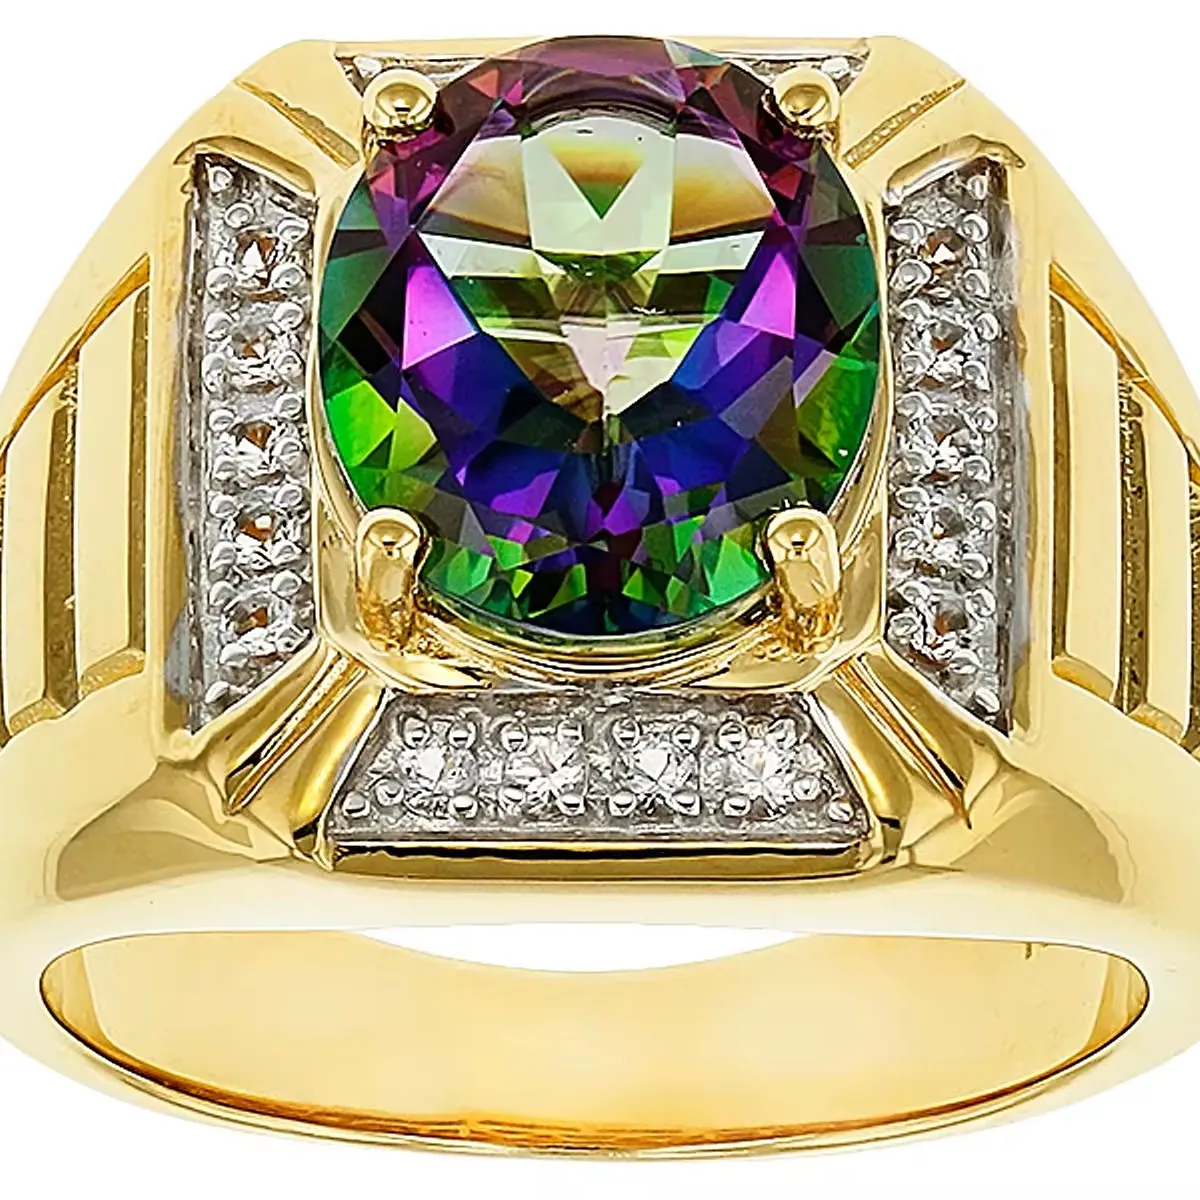 Anel de Topaz místico multicolorido para cavalheiro | ouro 18K sobre prata | Desenho exclusivo e elegante | joias com pedras preciosas atacado